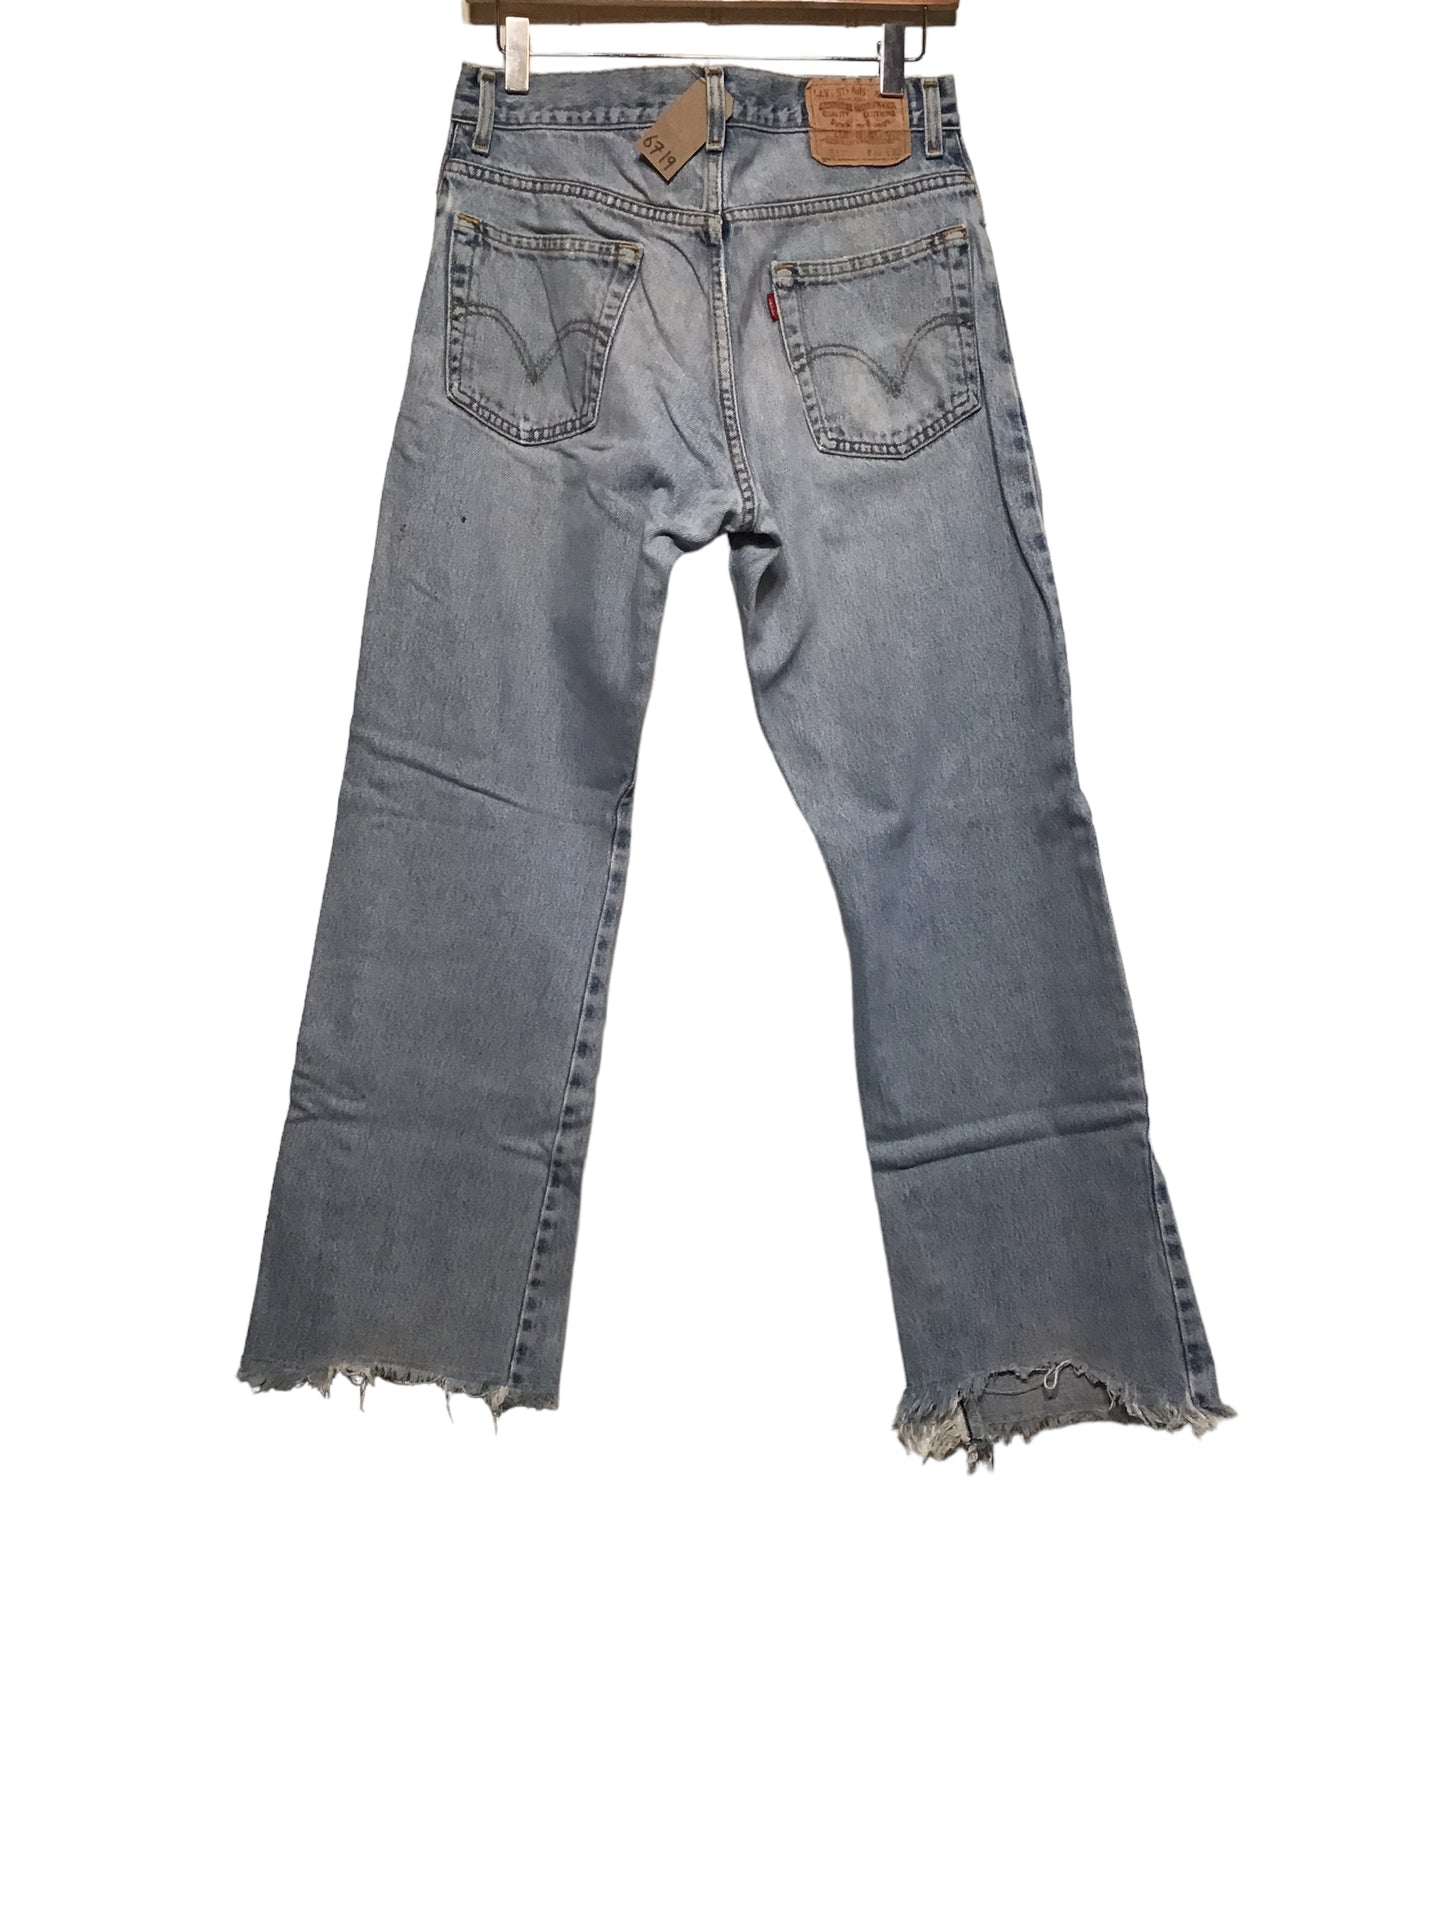 Levi 517 Jeans (31x32)